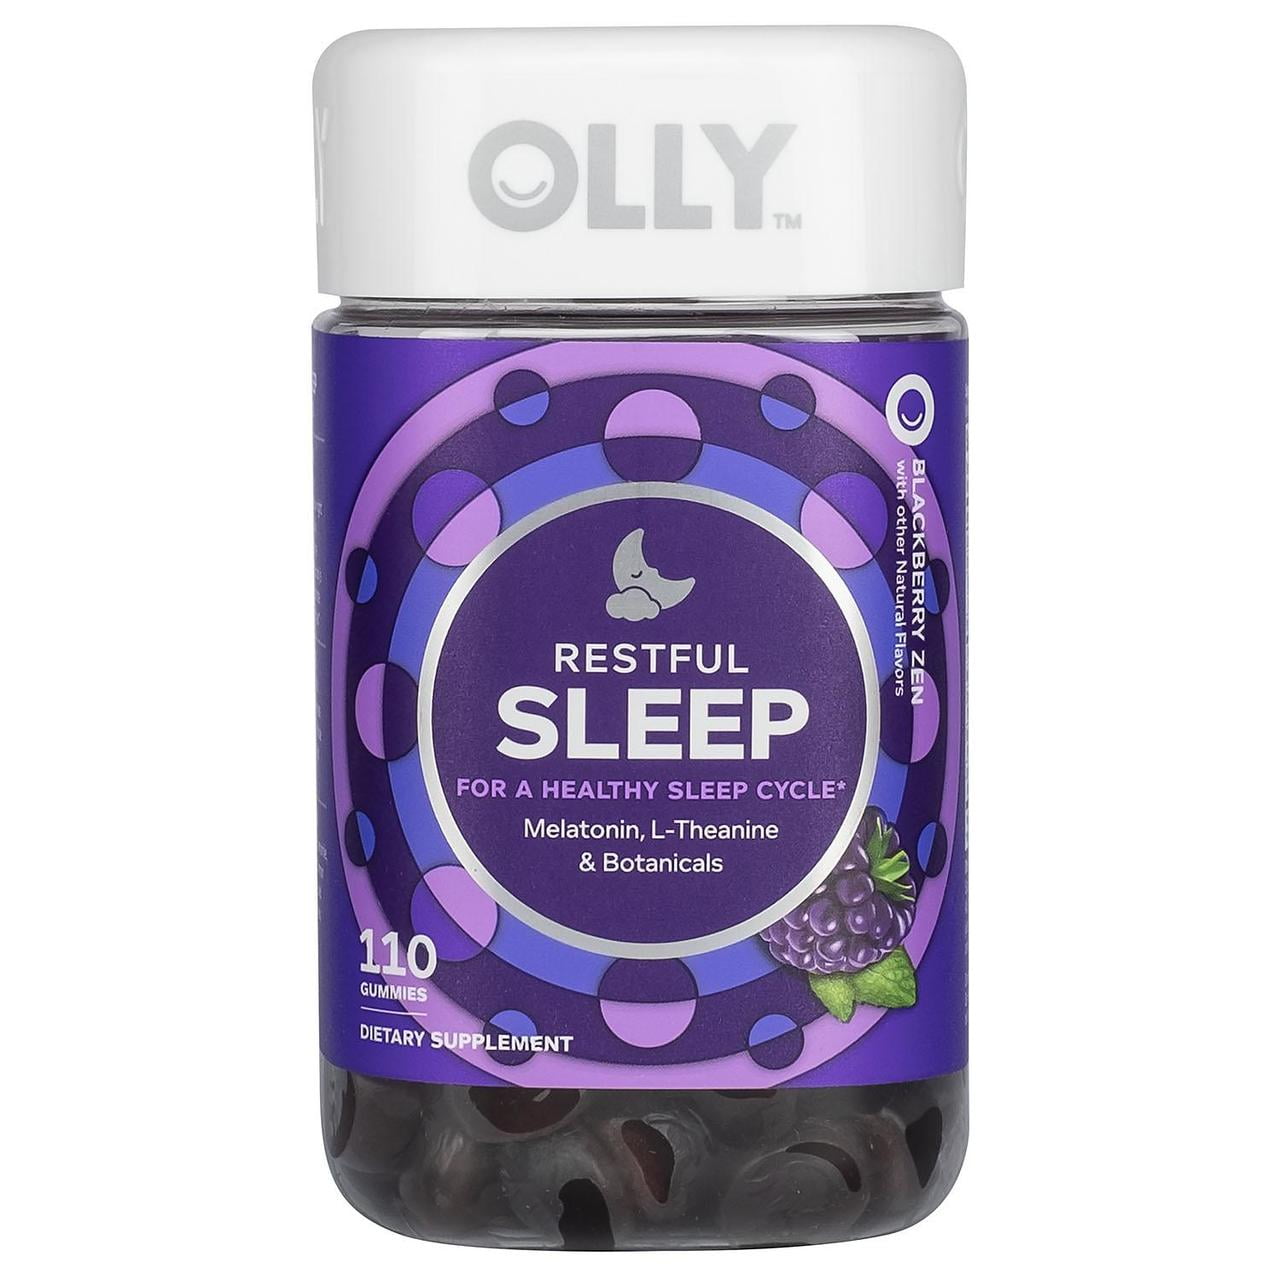 olly sleep aid